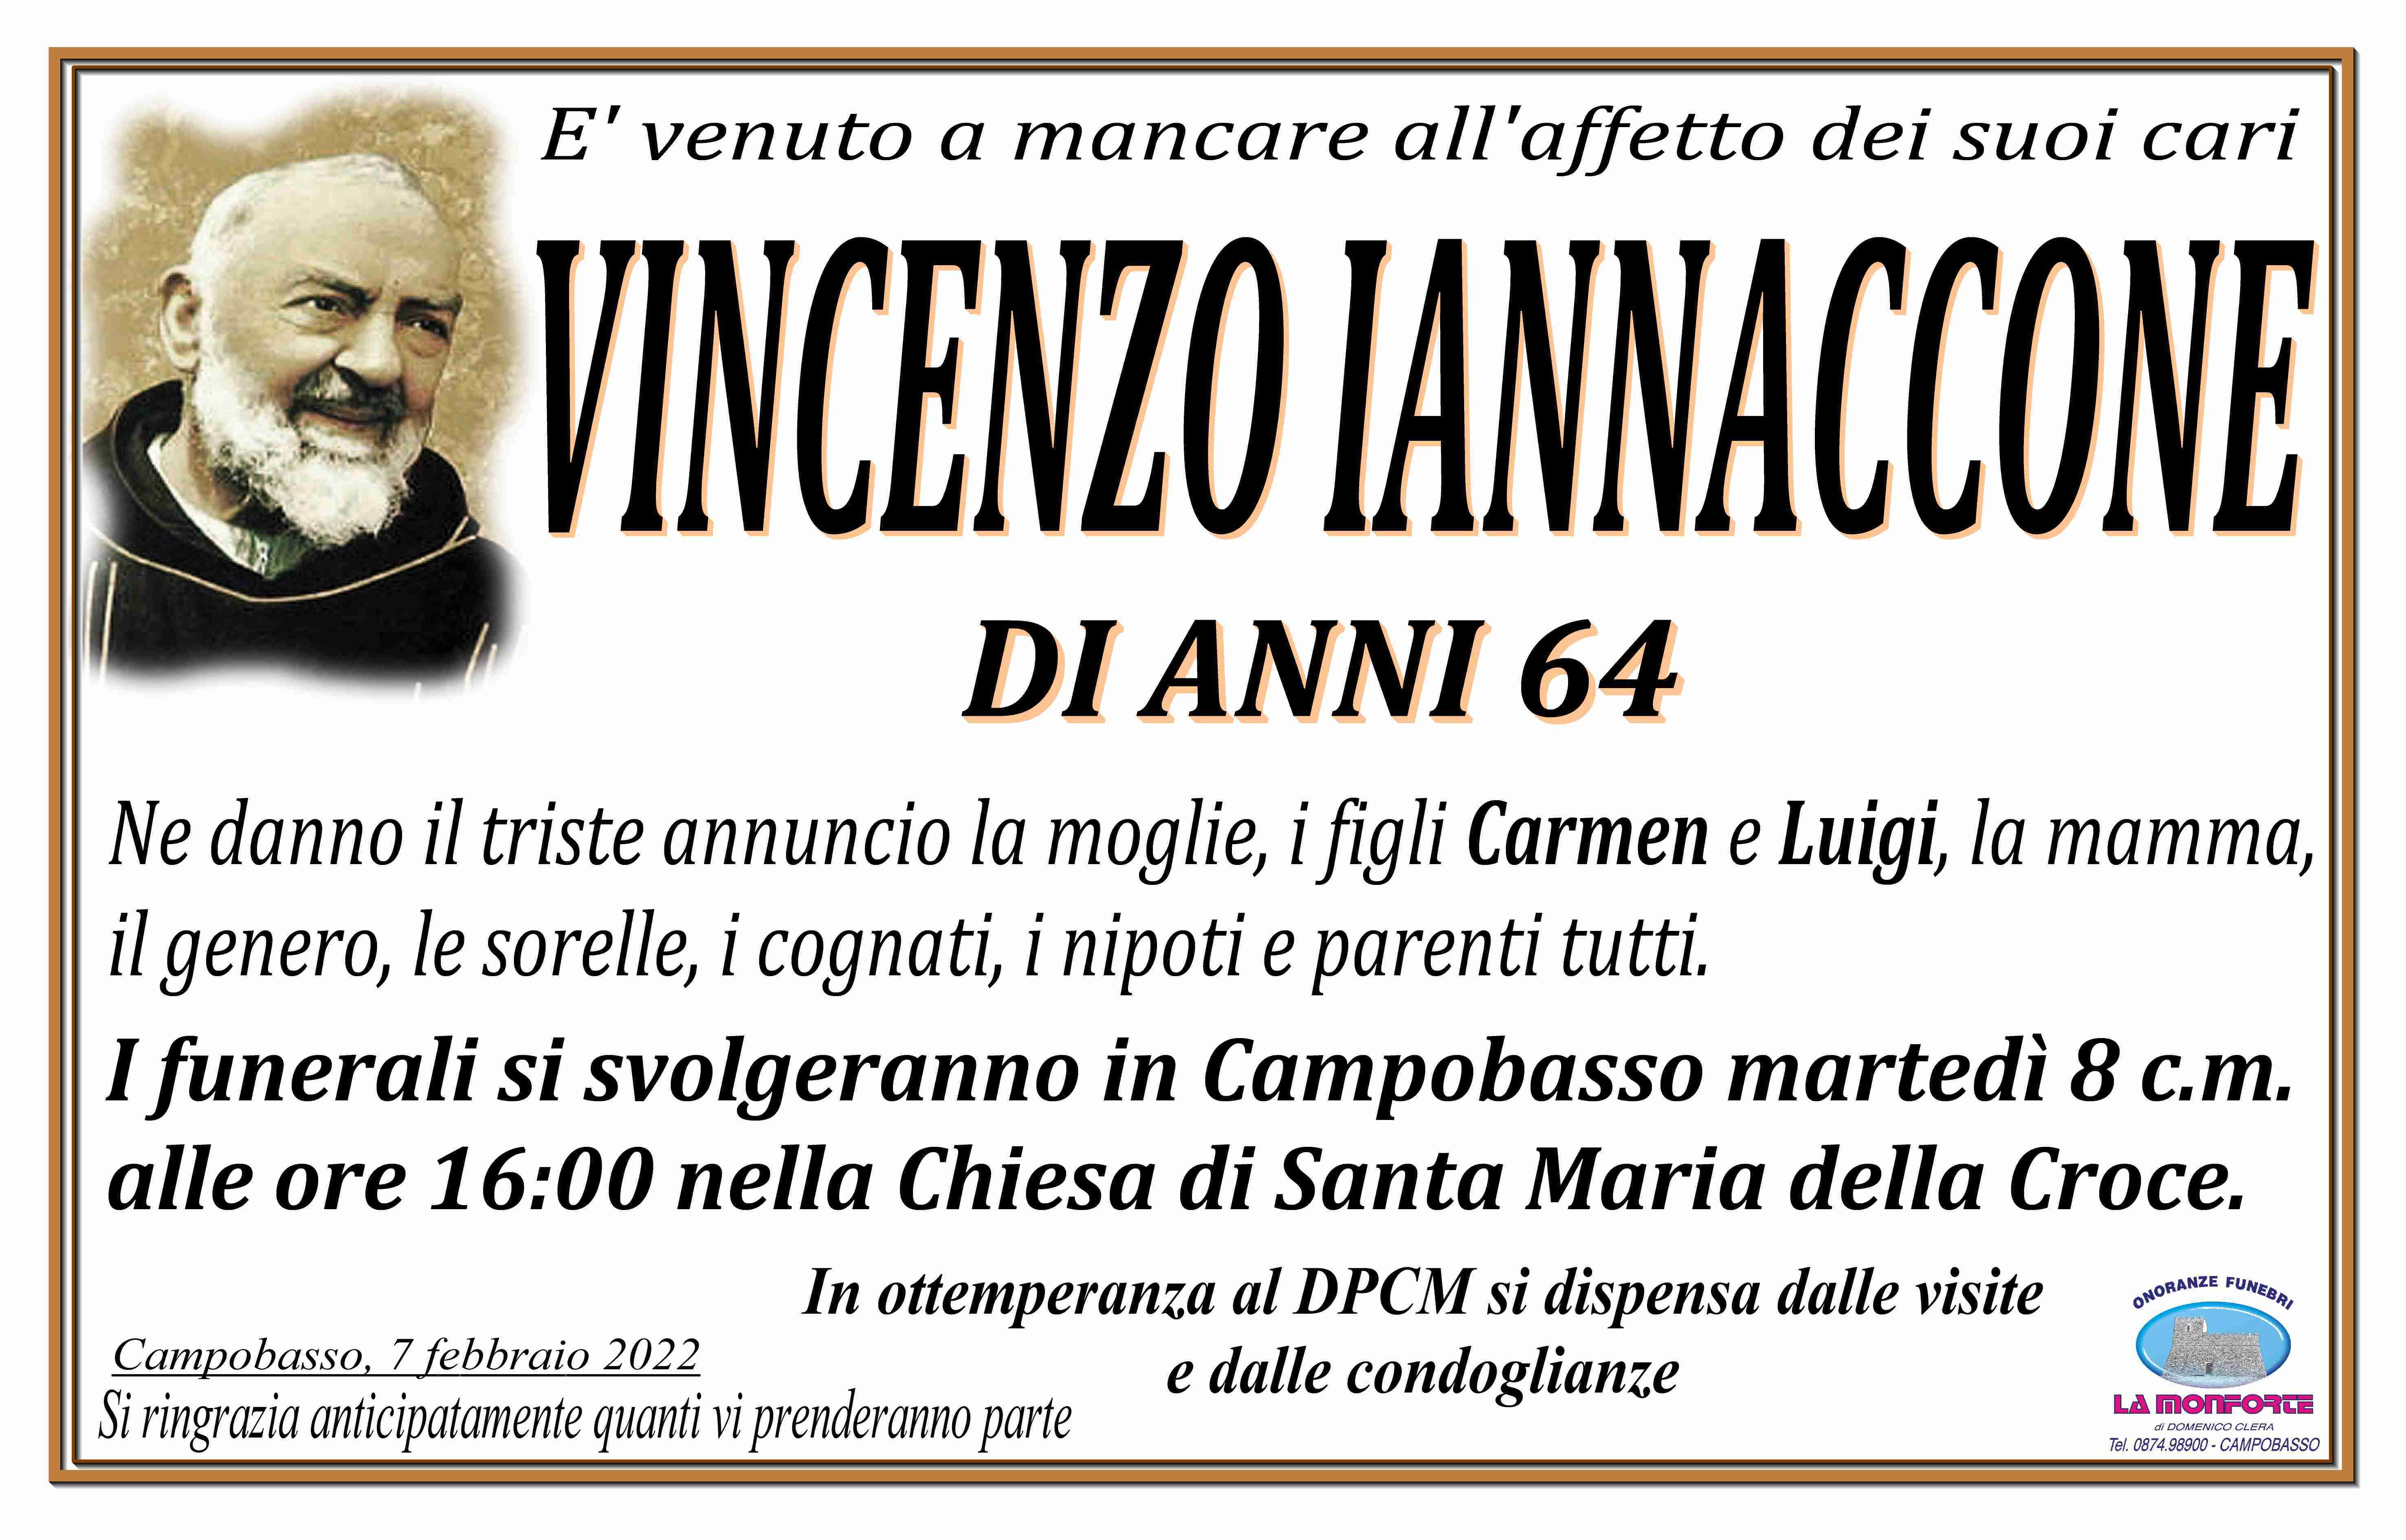 Vincenzo Iannaccone